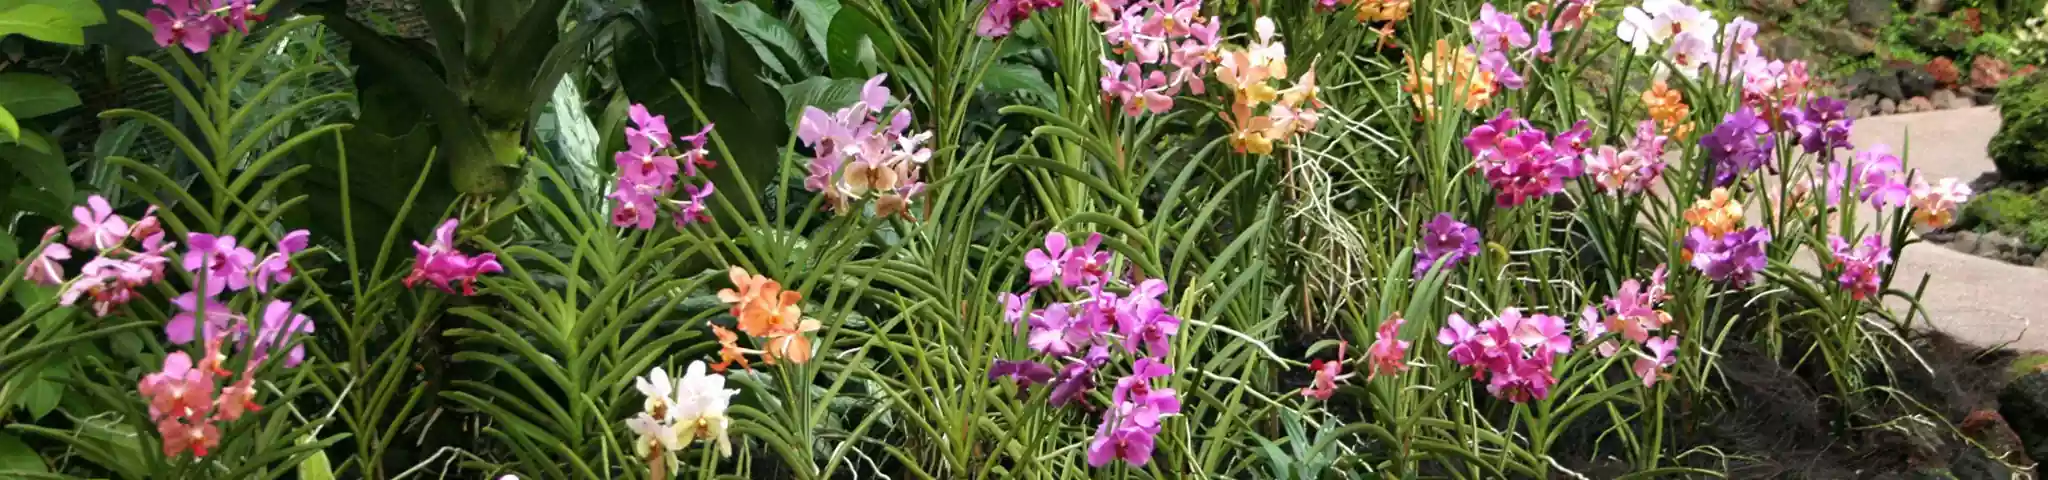 Orchid Flower in Garden